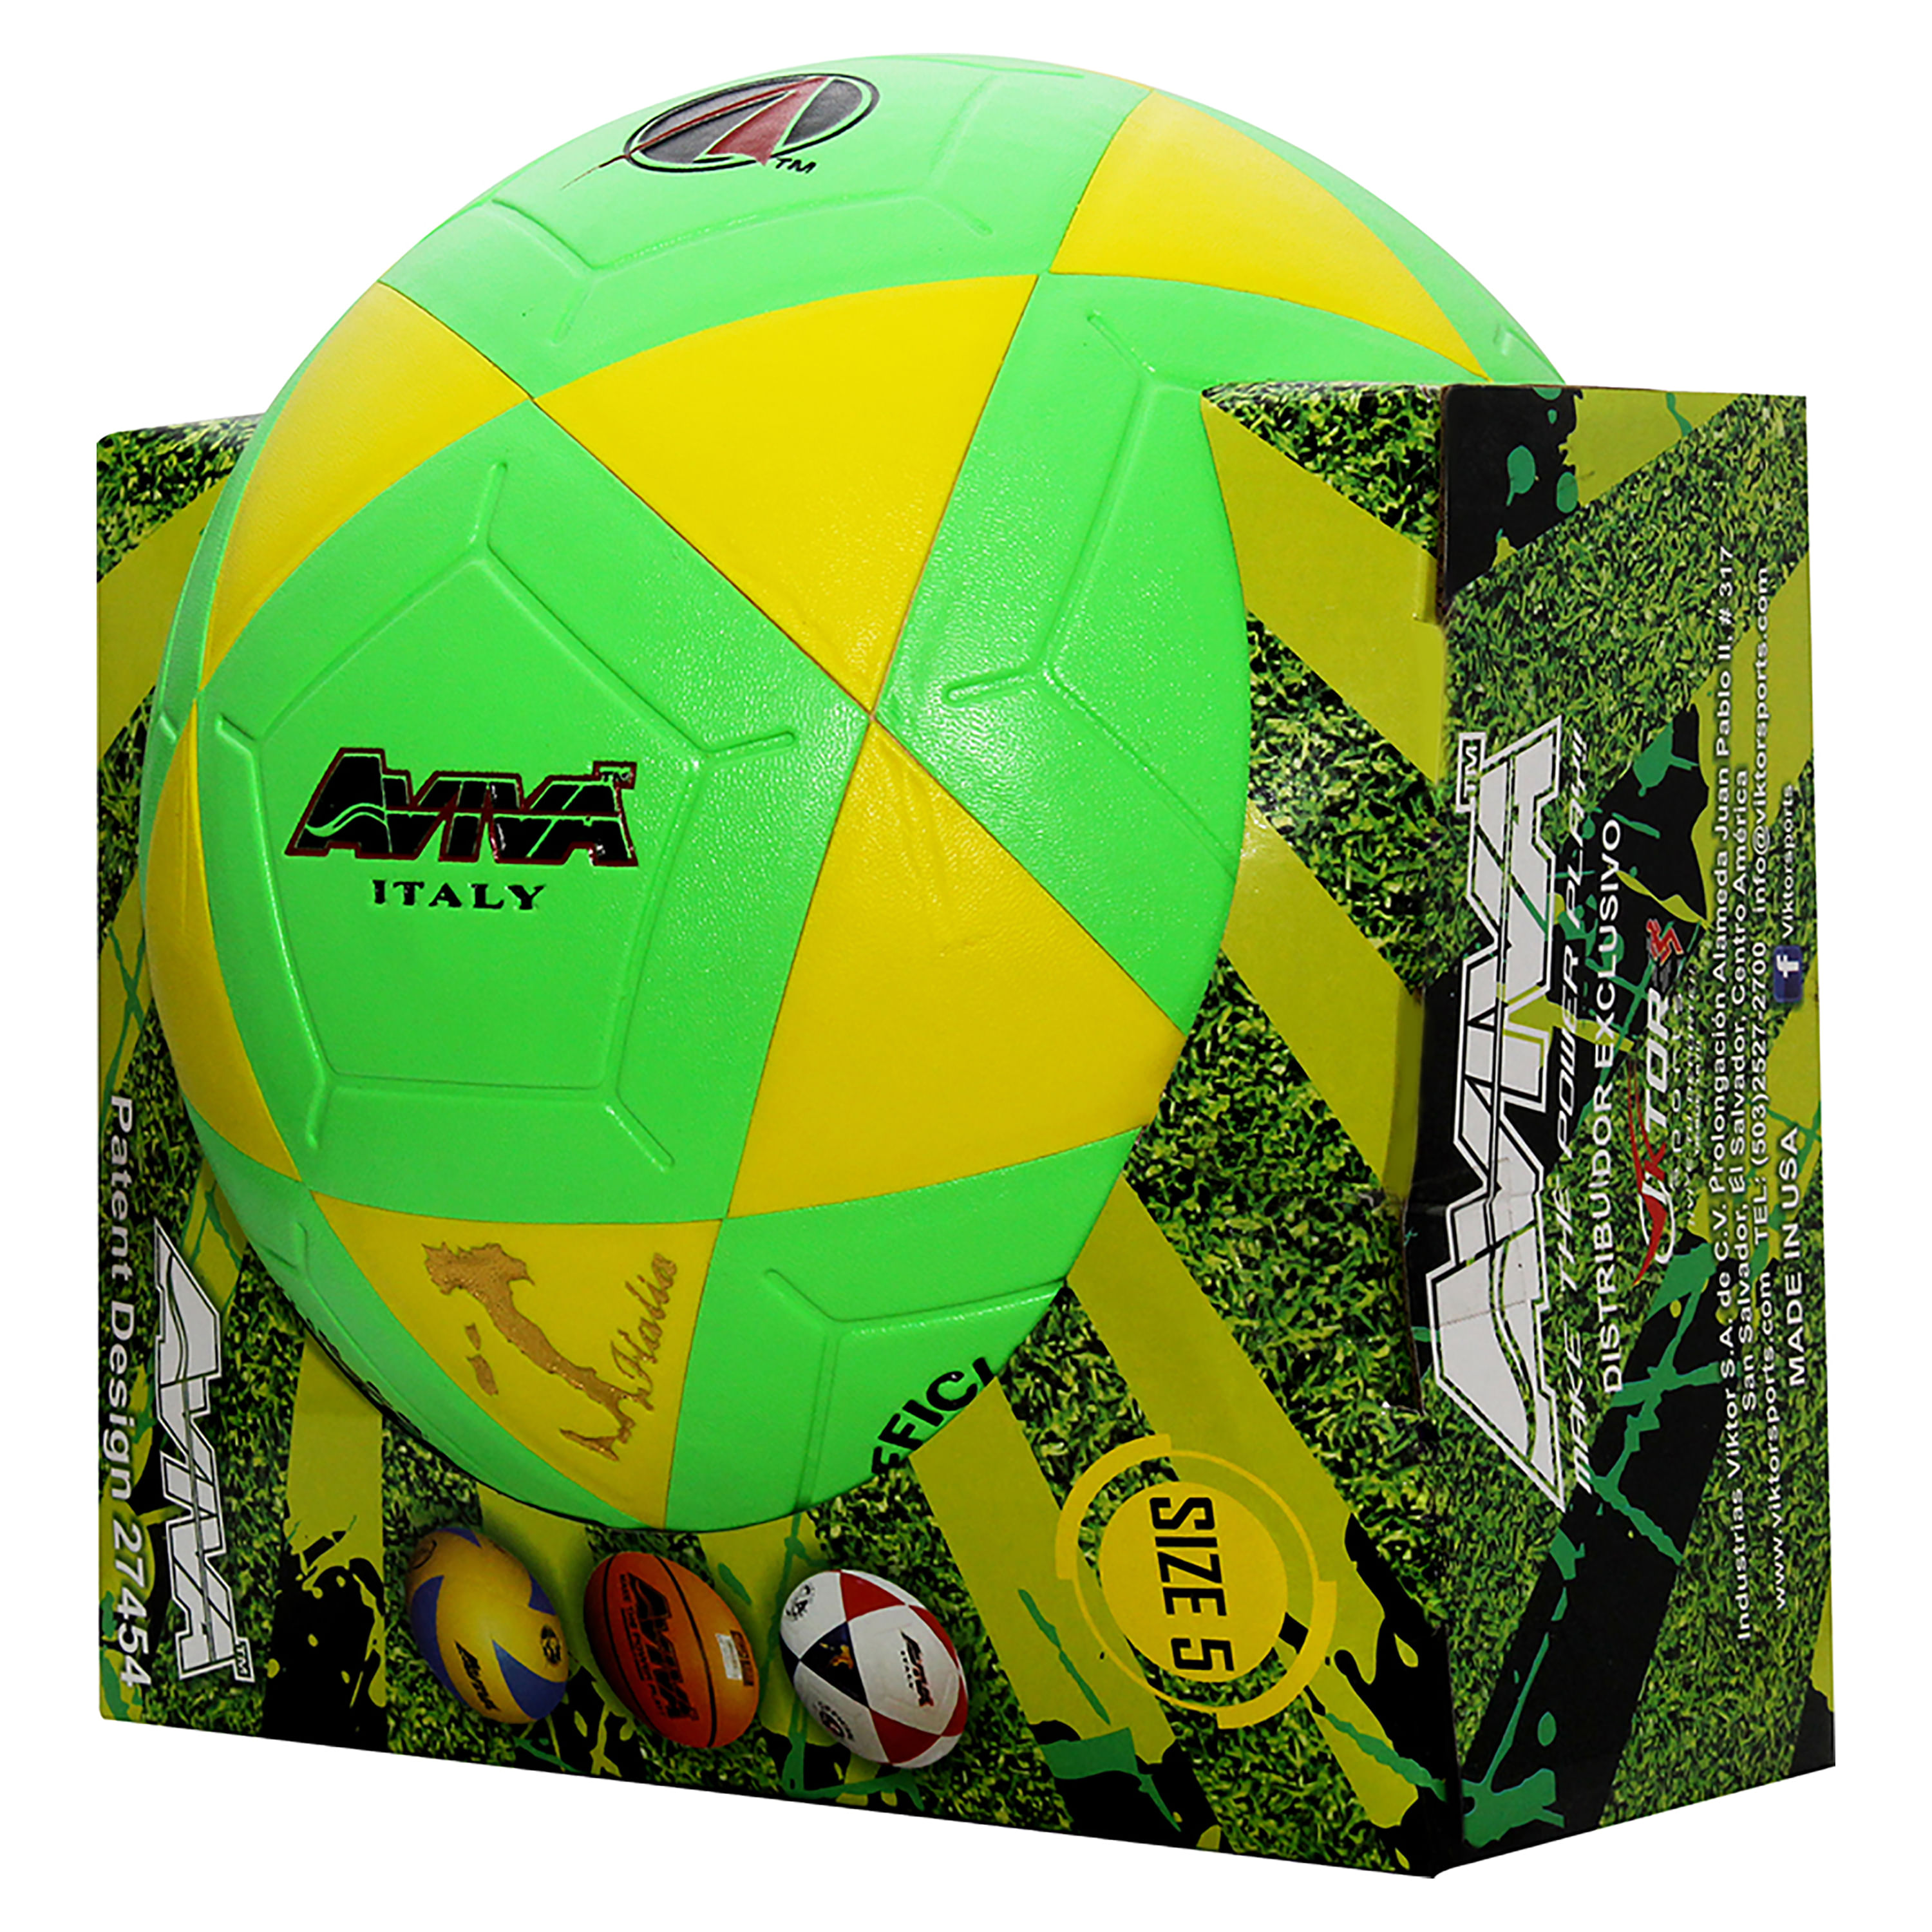 Comprar Pelota Futbol De Cuero Aviva 5 | Walmart El Salvador - Walmart |  Compra en línea